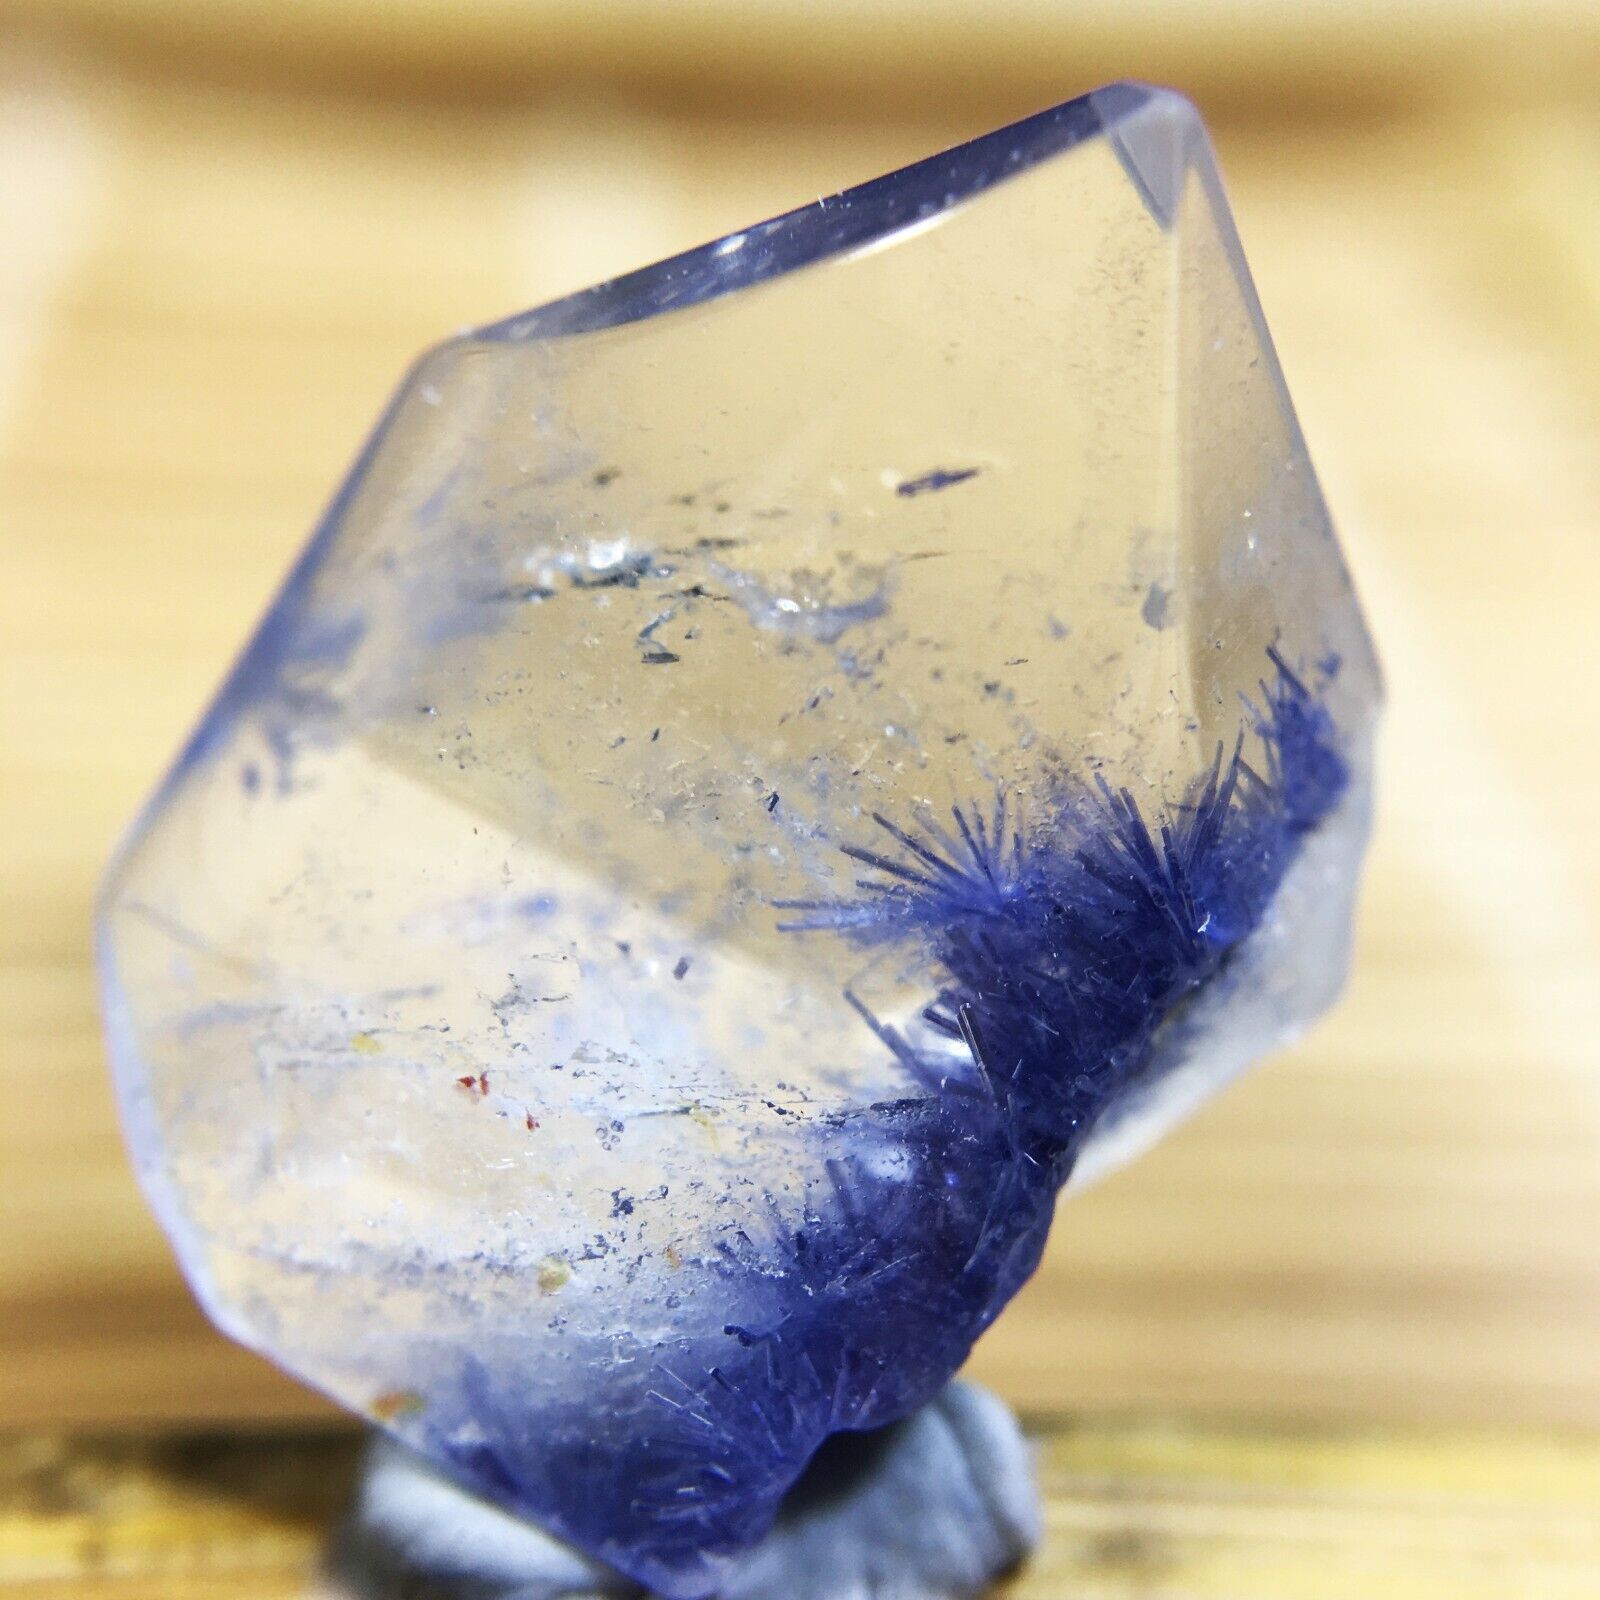 6.8Ct Very Rare NATURAL Beautiful Blue Dumortierite Quartz Crystal Specimen